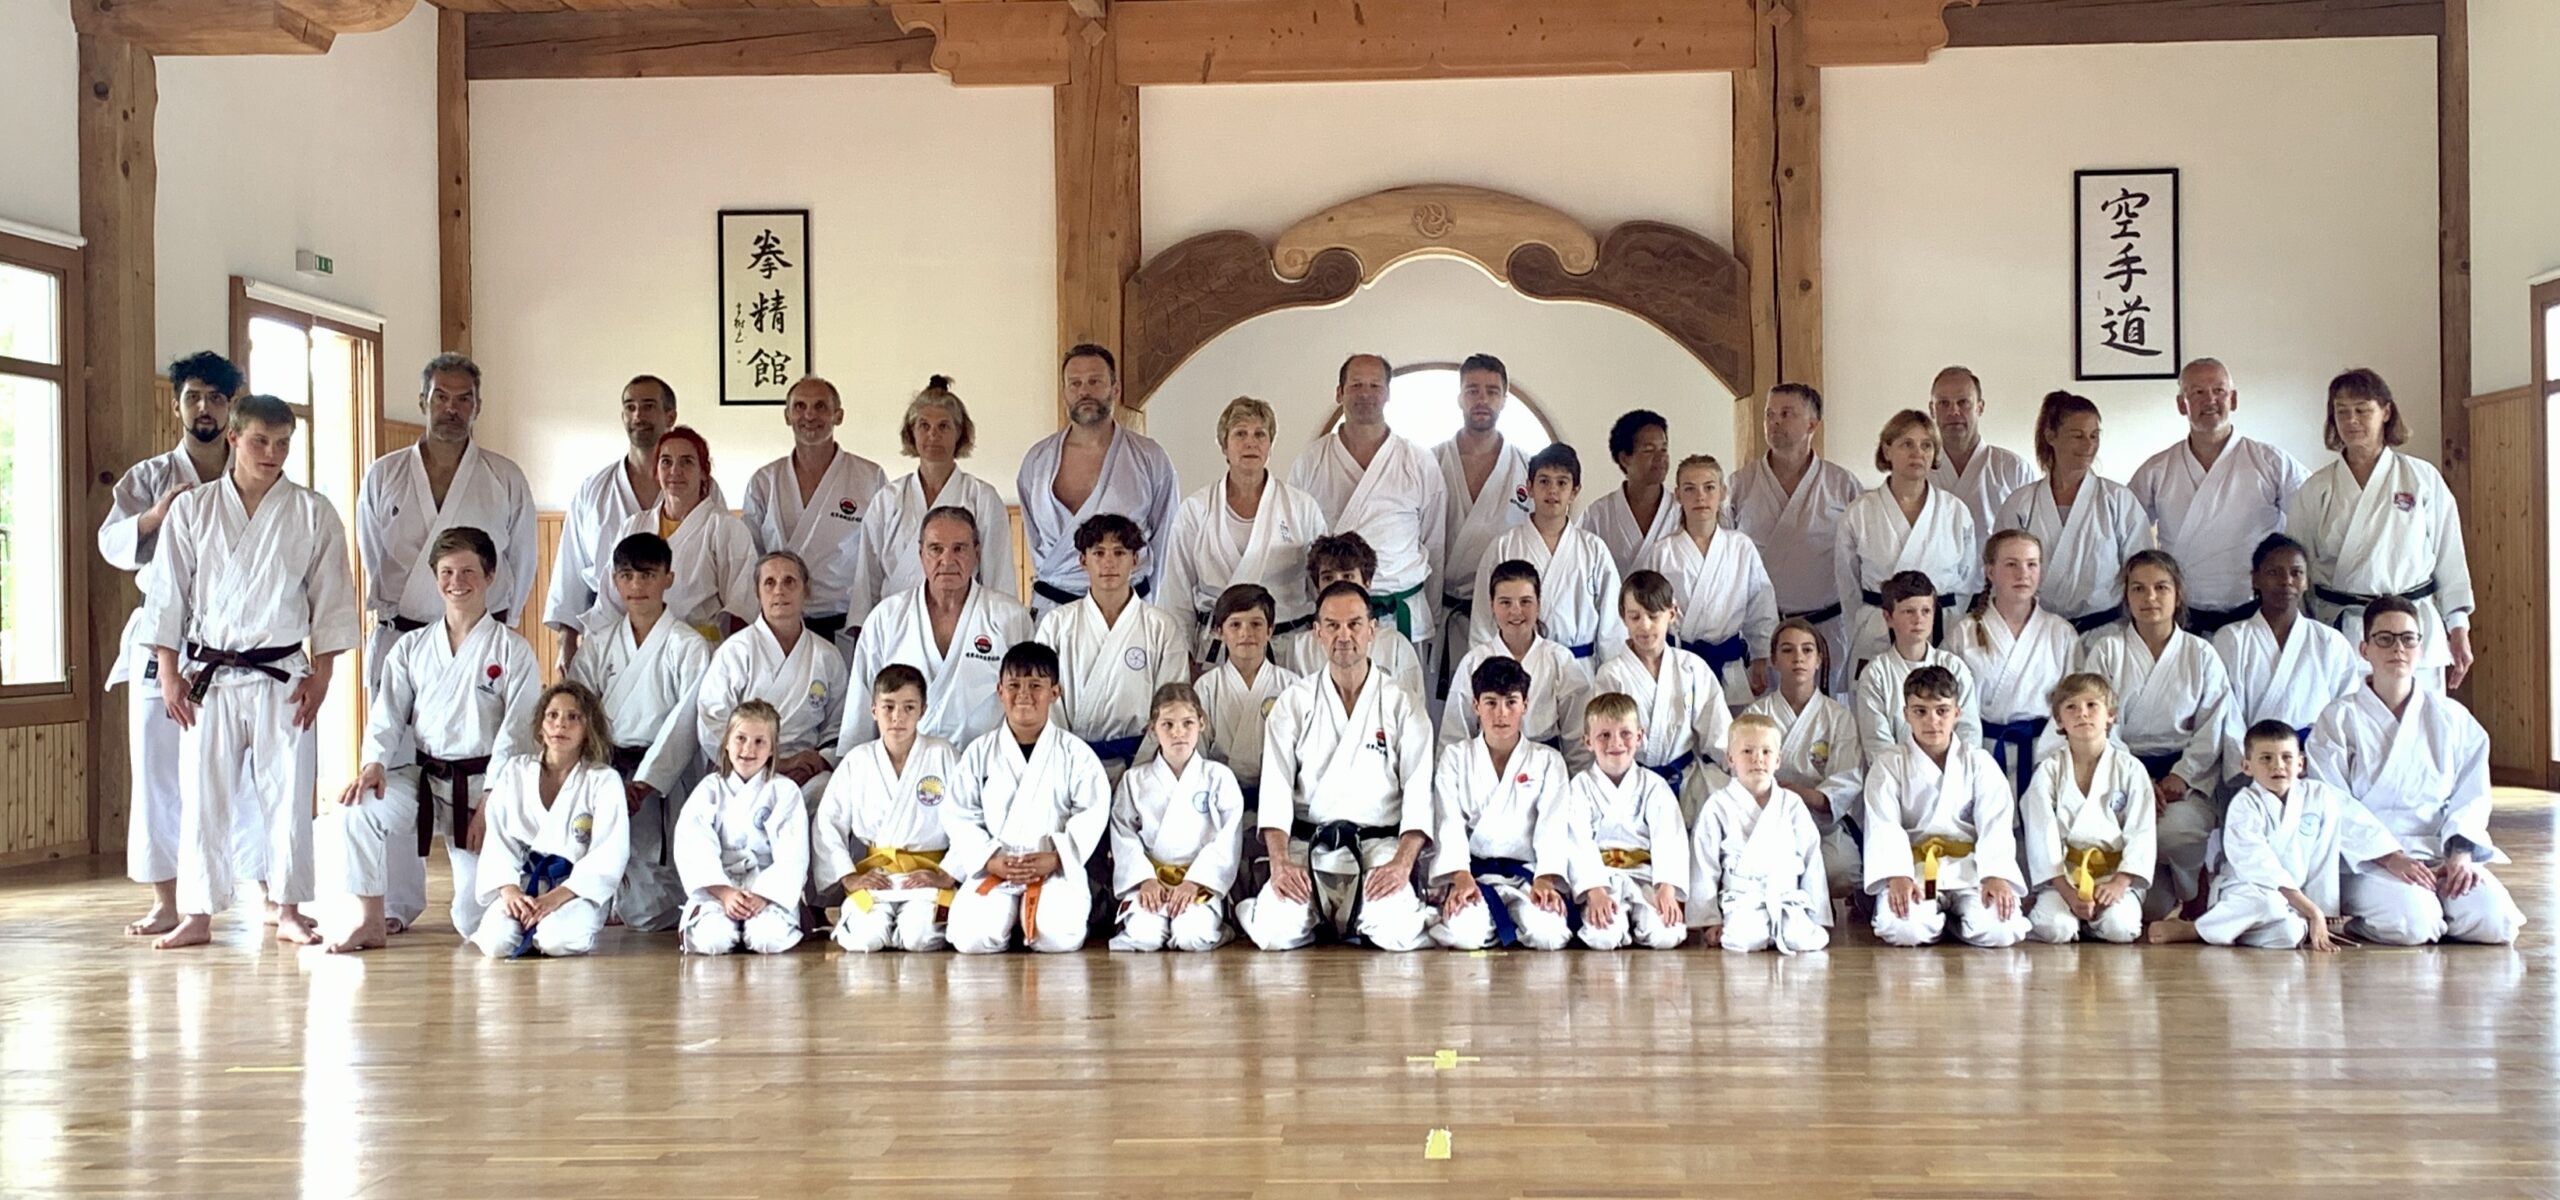 Kenseikan Karateschule Konolfingen